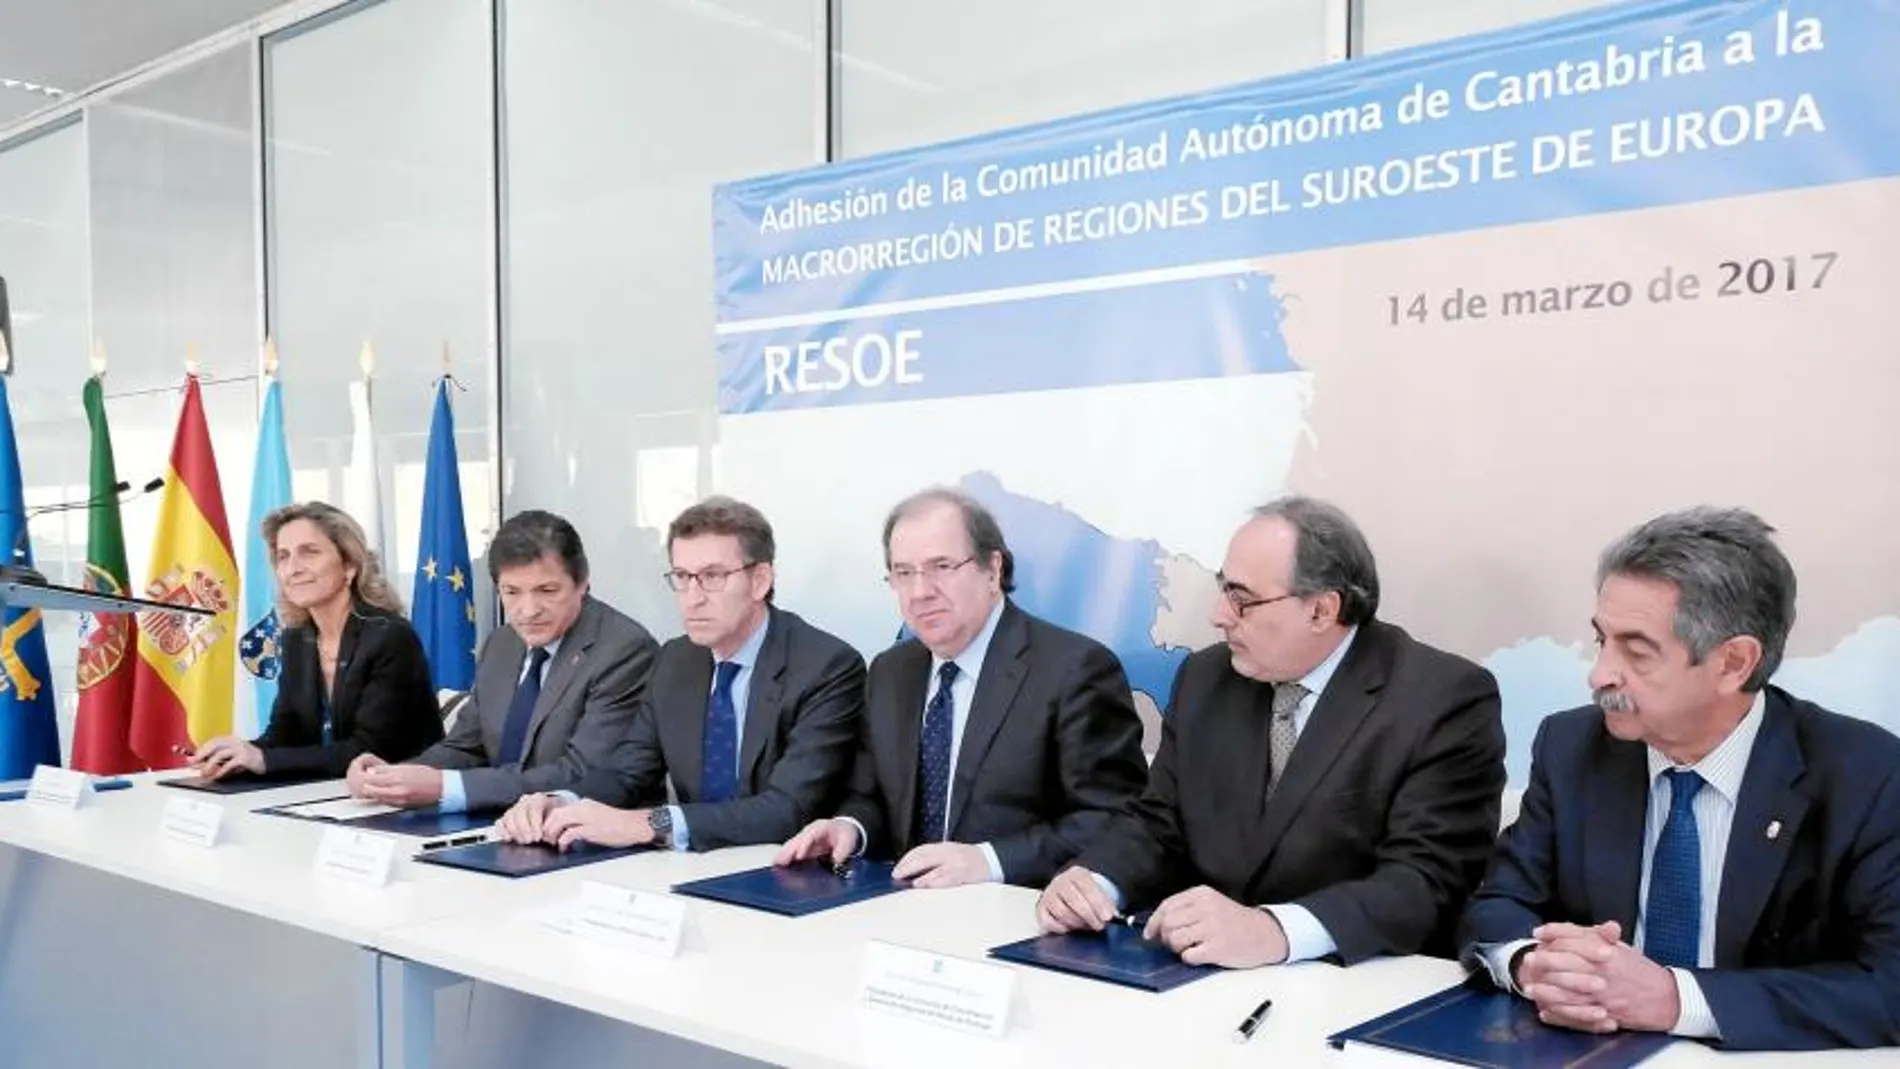 Los presidentes de las comunidades españolas y portuguesas, con Juan Vicente Herrera a la cabeza, participantes en la Macrorregión «Resoe», firman el Memorando de adhesión de Cantabria